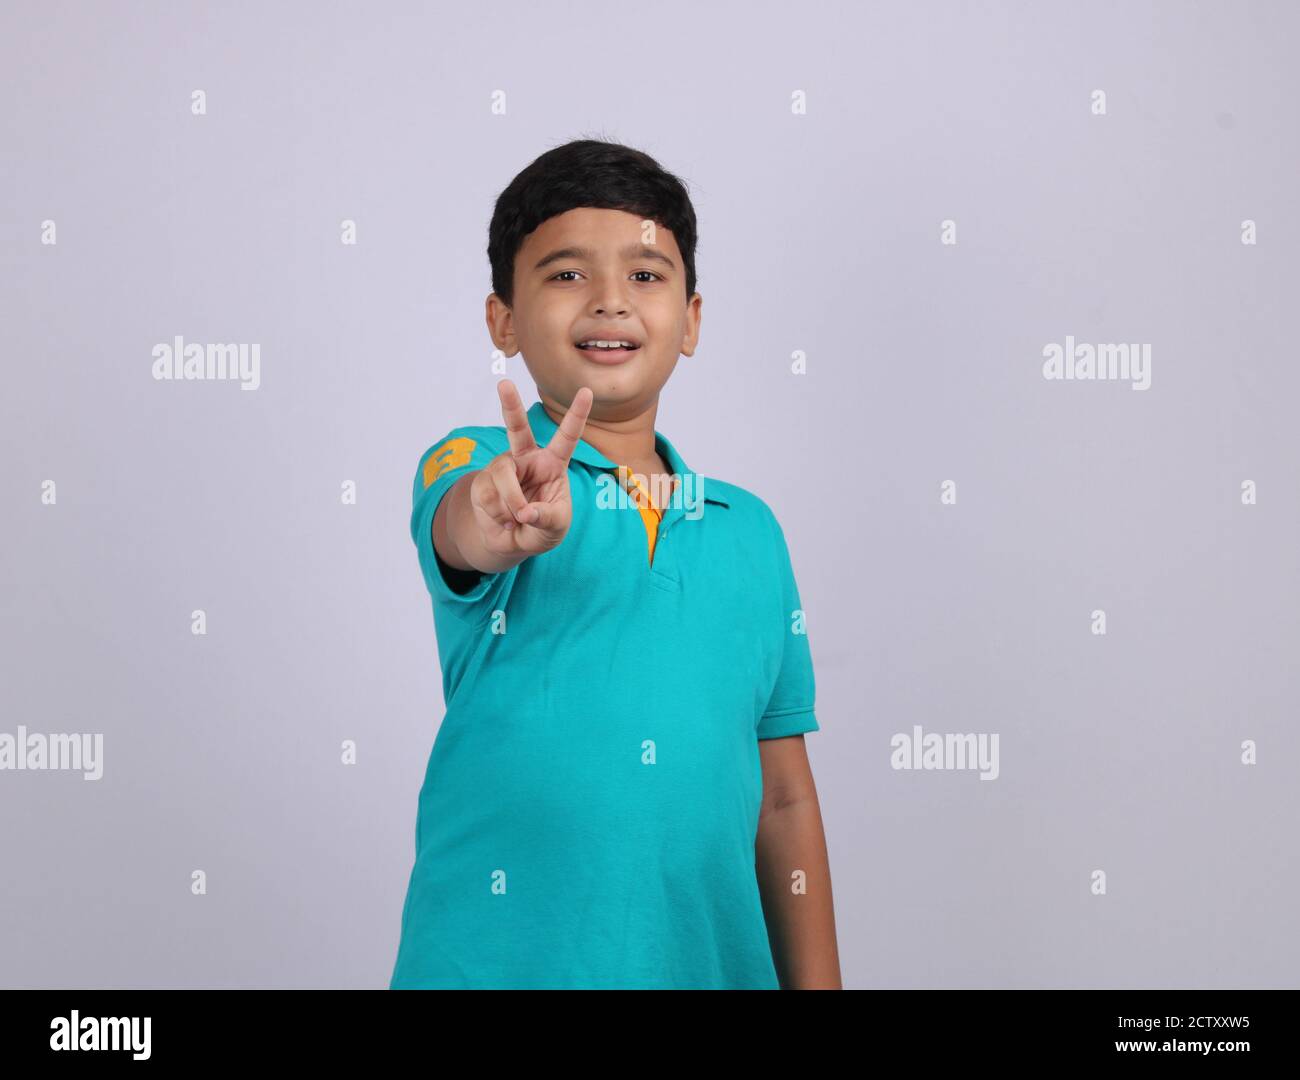 Niedlich und smart indischen Jungen Anzeige Pose. Es ist ein nach vorne gerichtete Foto, wo Junge sieht zuversichtlich und drückt sich mit der Hand Geste. Stockfoto